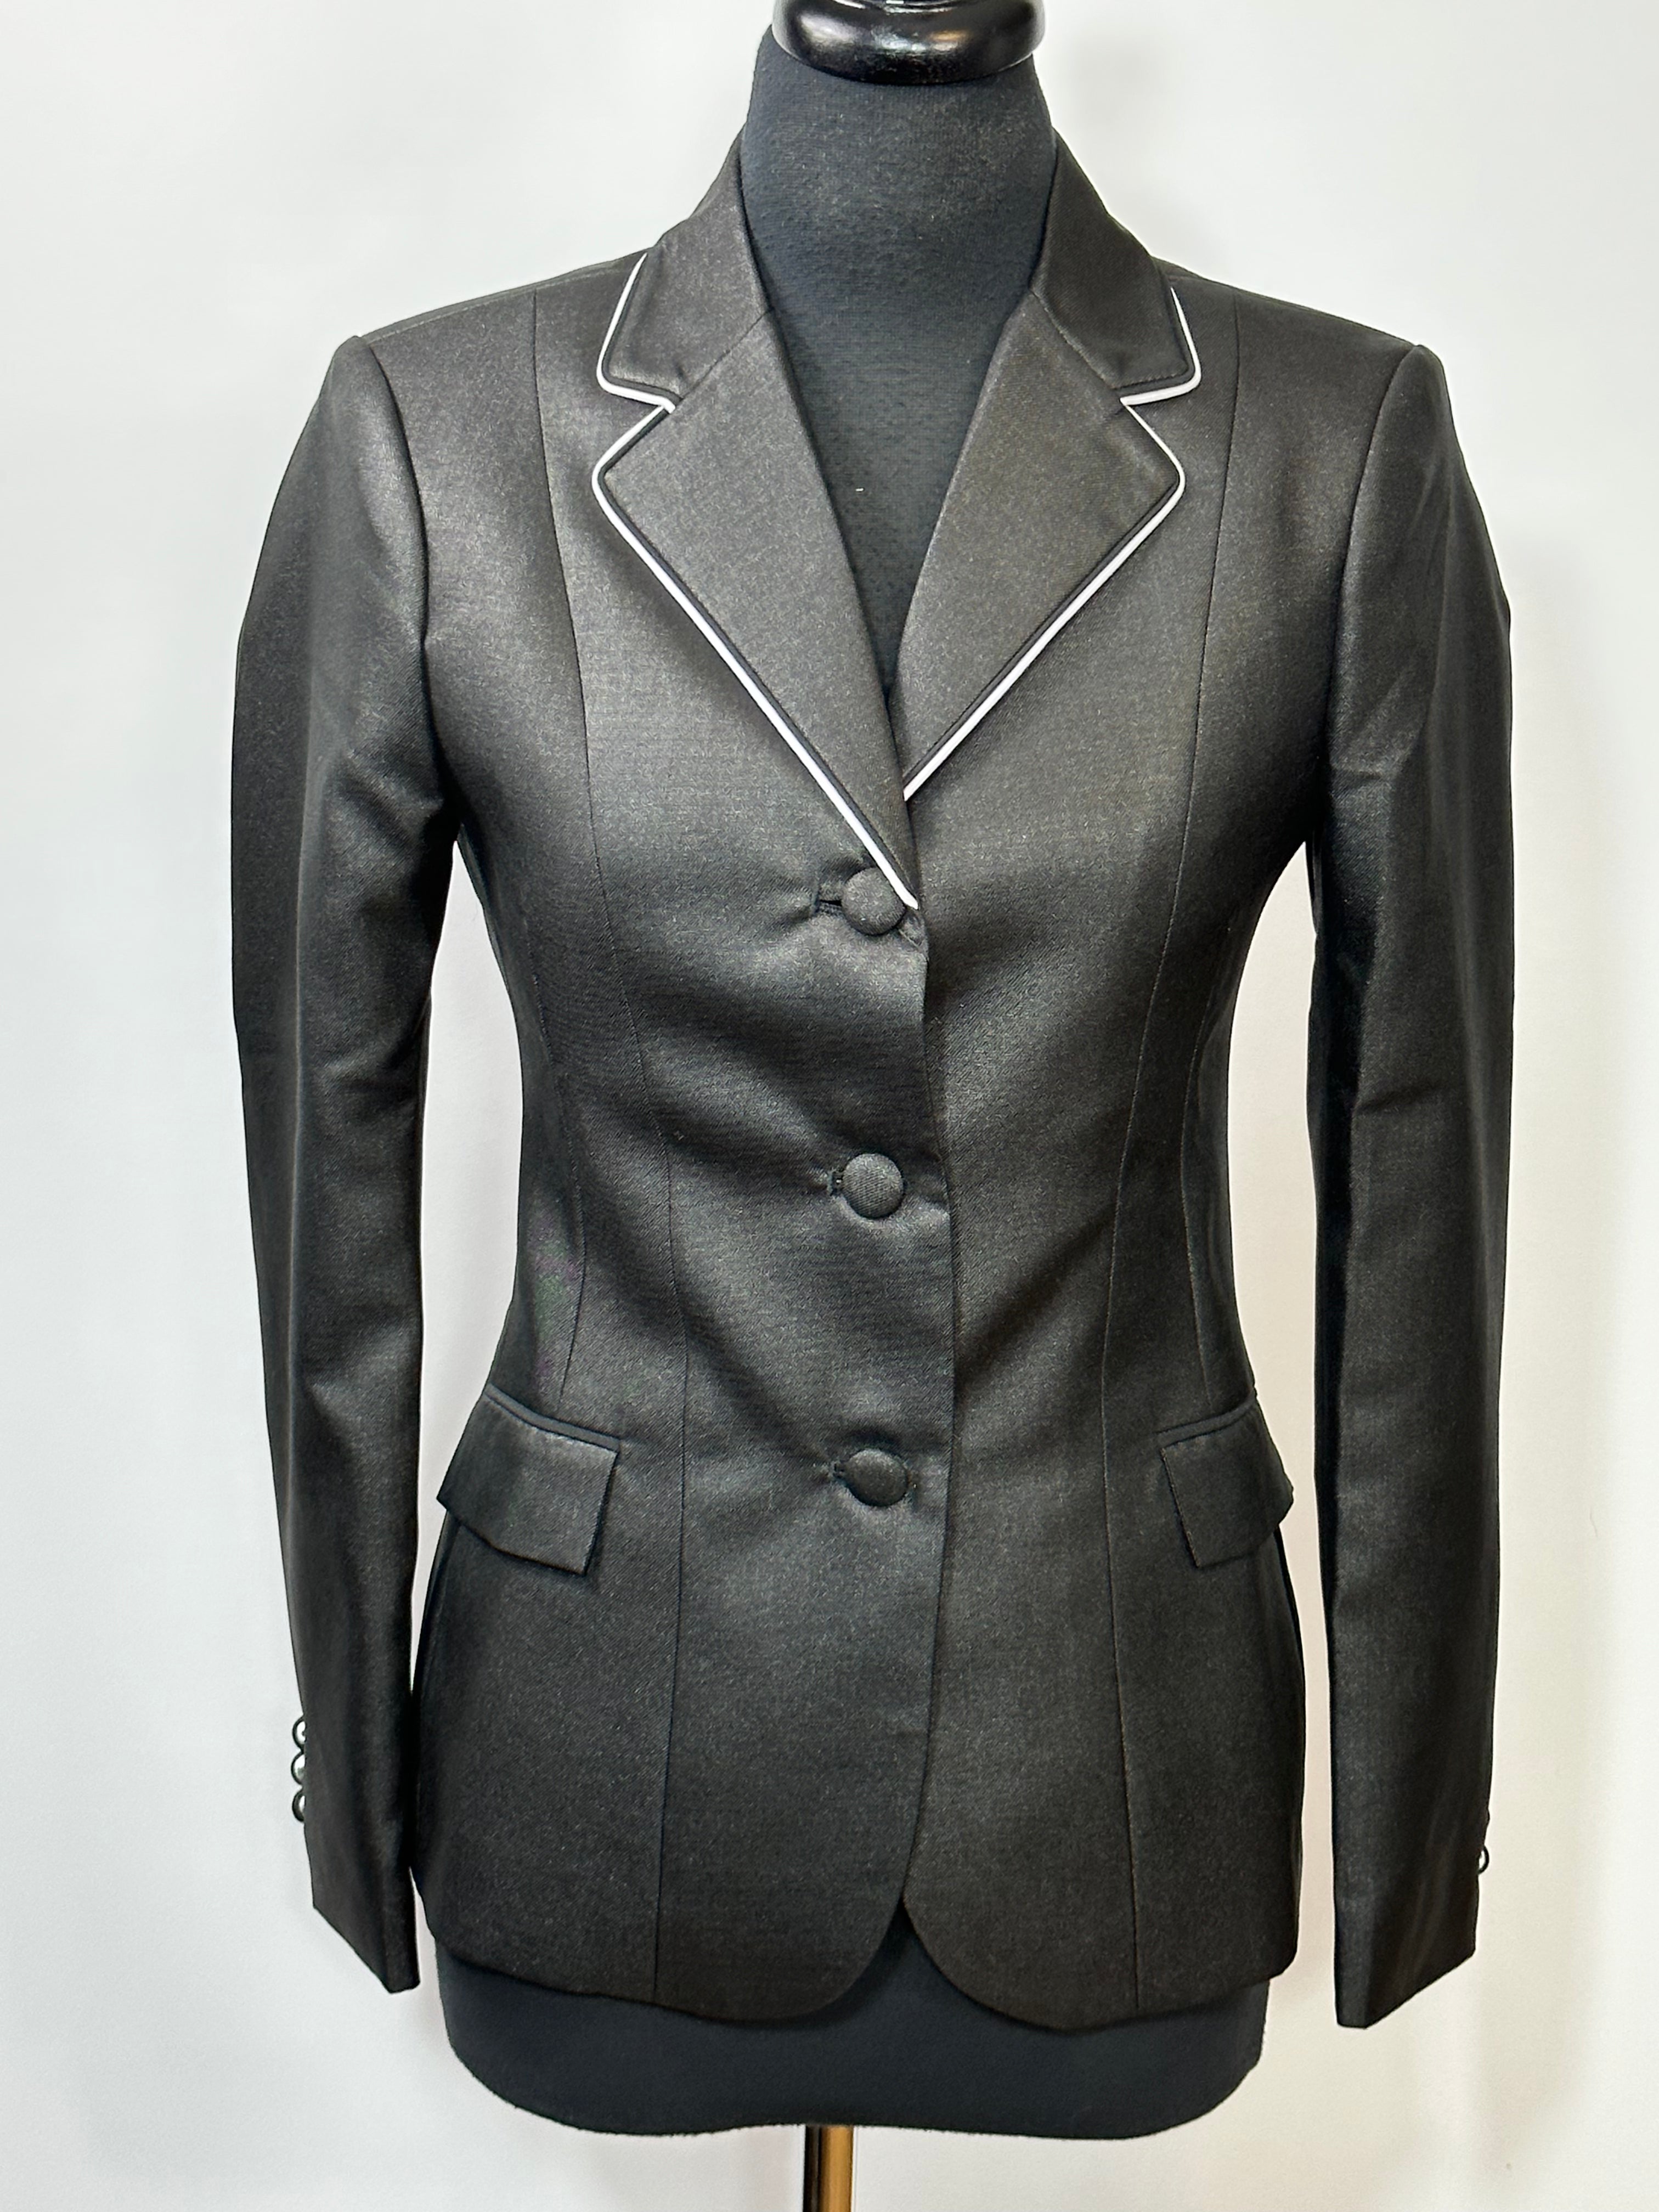 English Show Coat Black Sheen Fabric Code R335